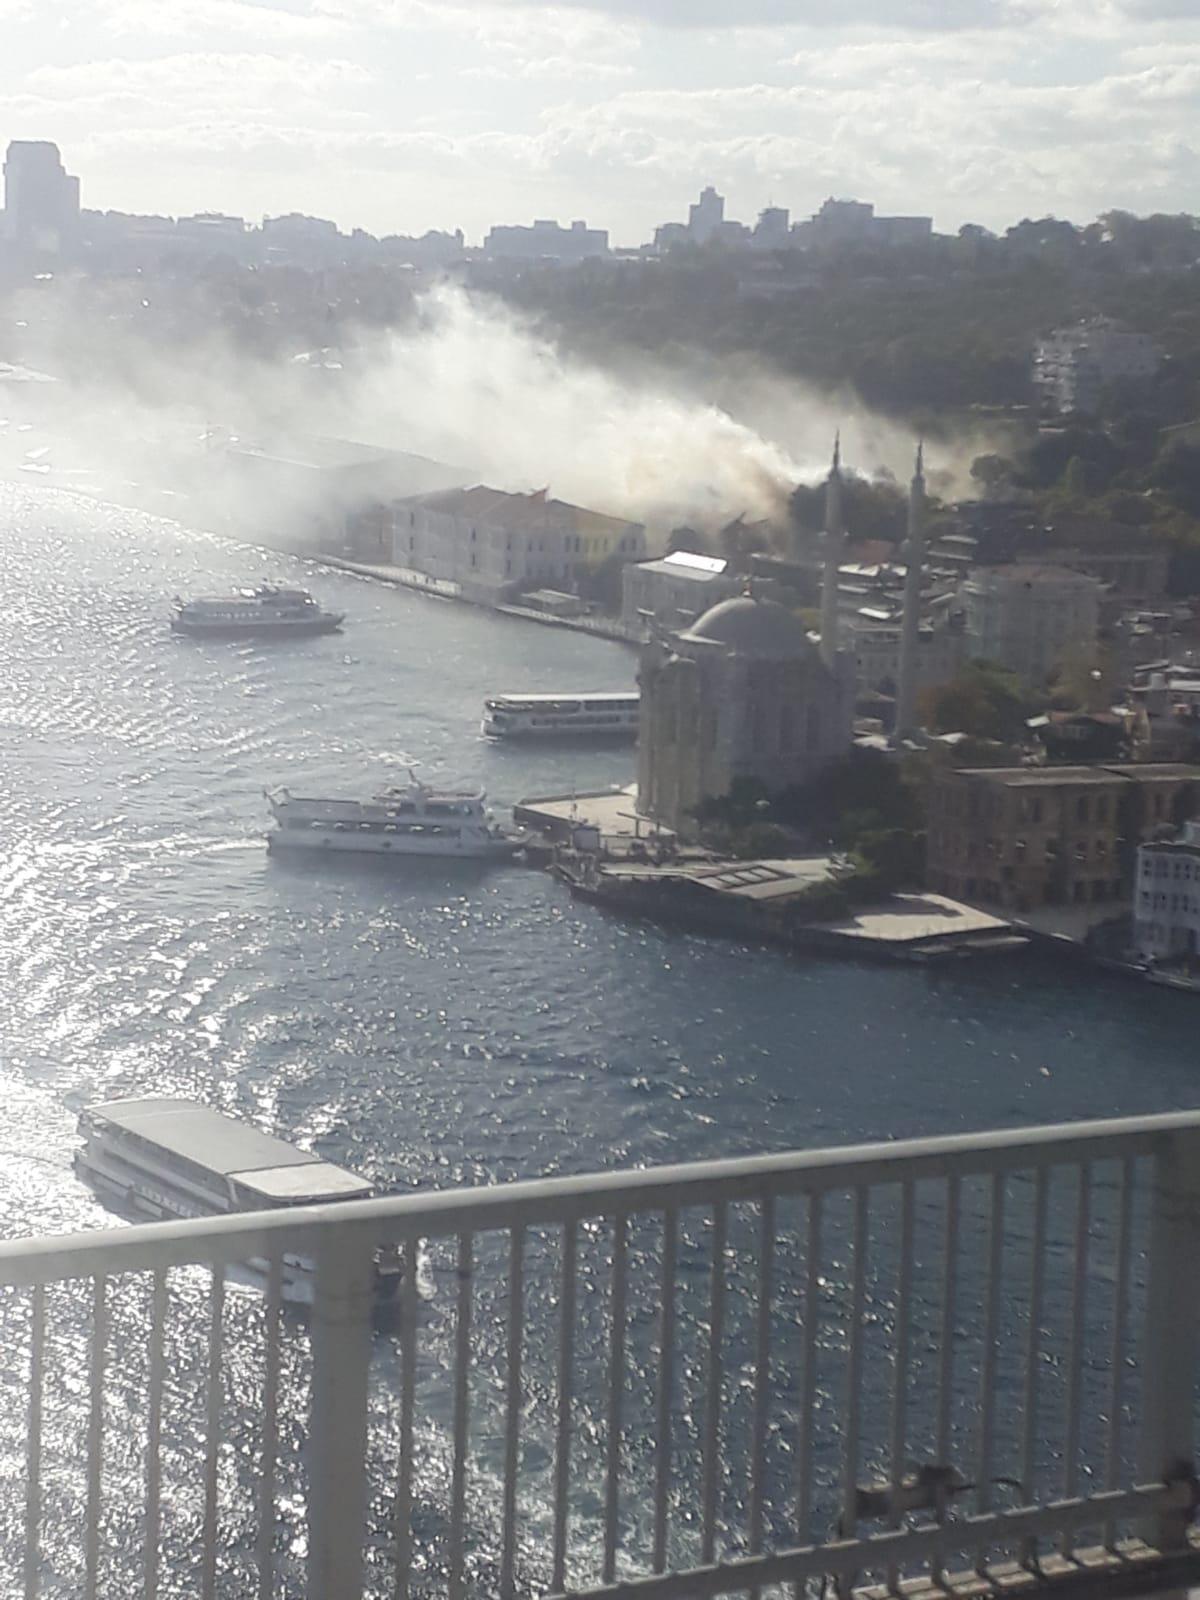 İstanbulda Kabataş Erkek Lisesinin bahçesindeki Feriye Sinemasında yangın çıktı